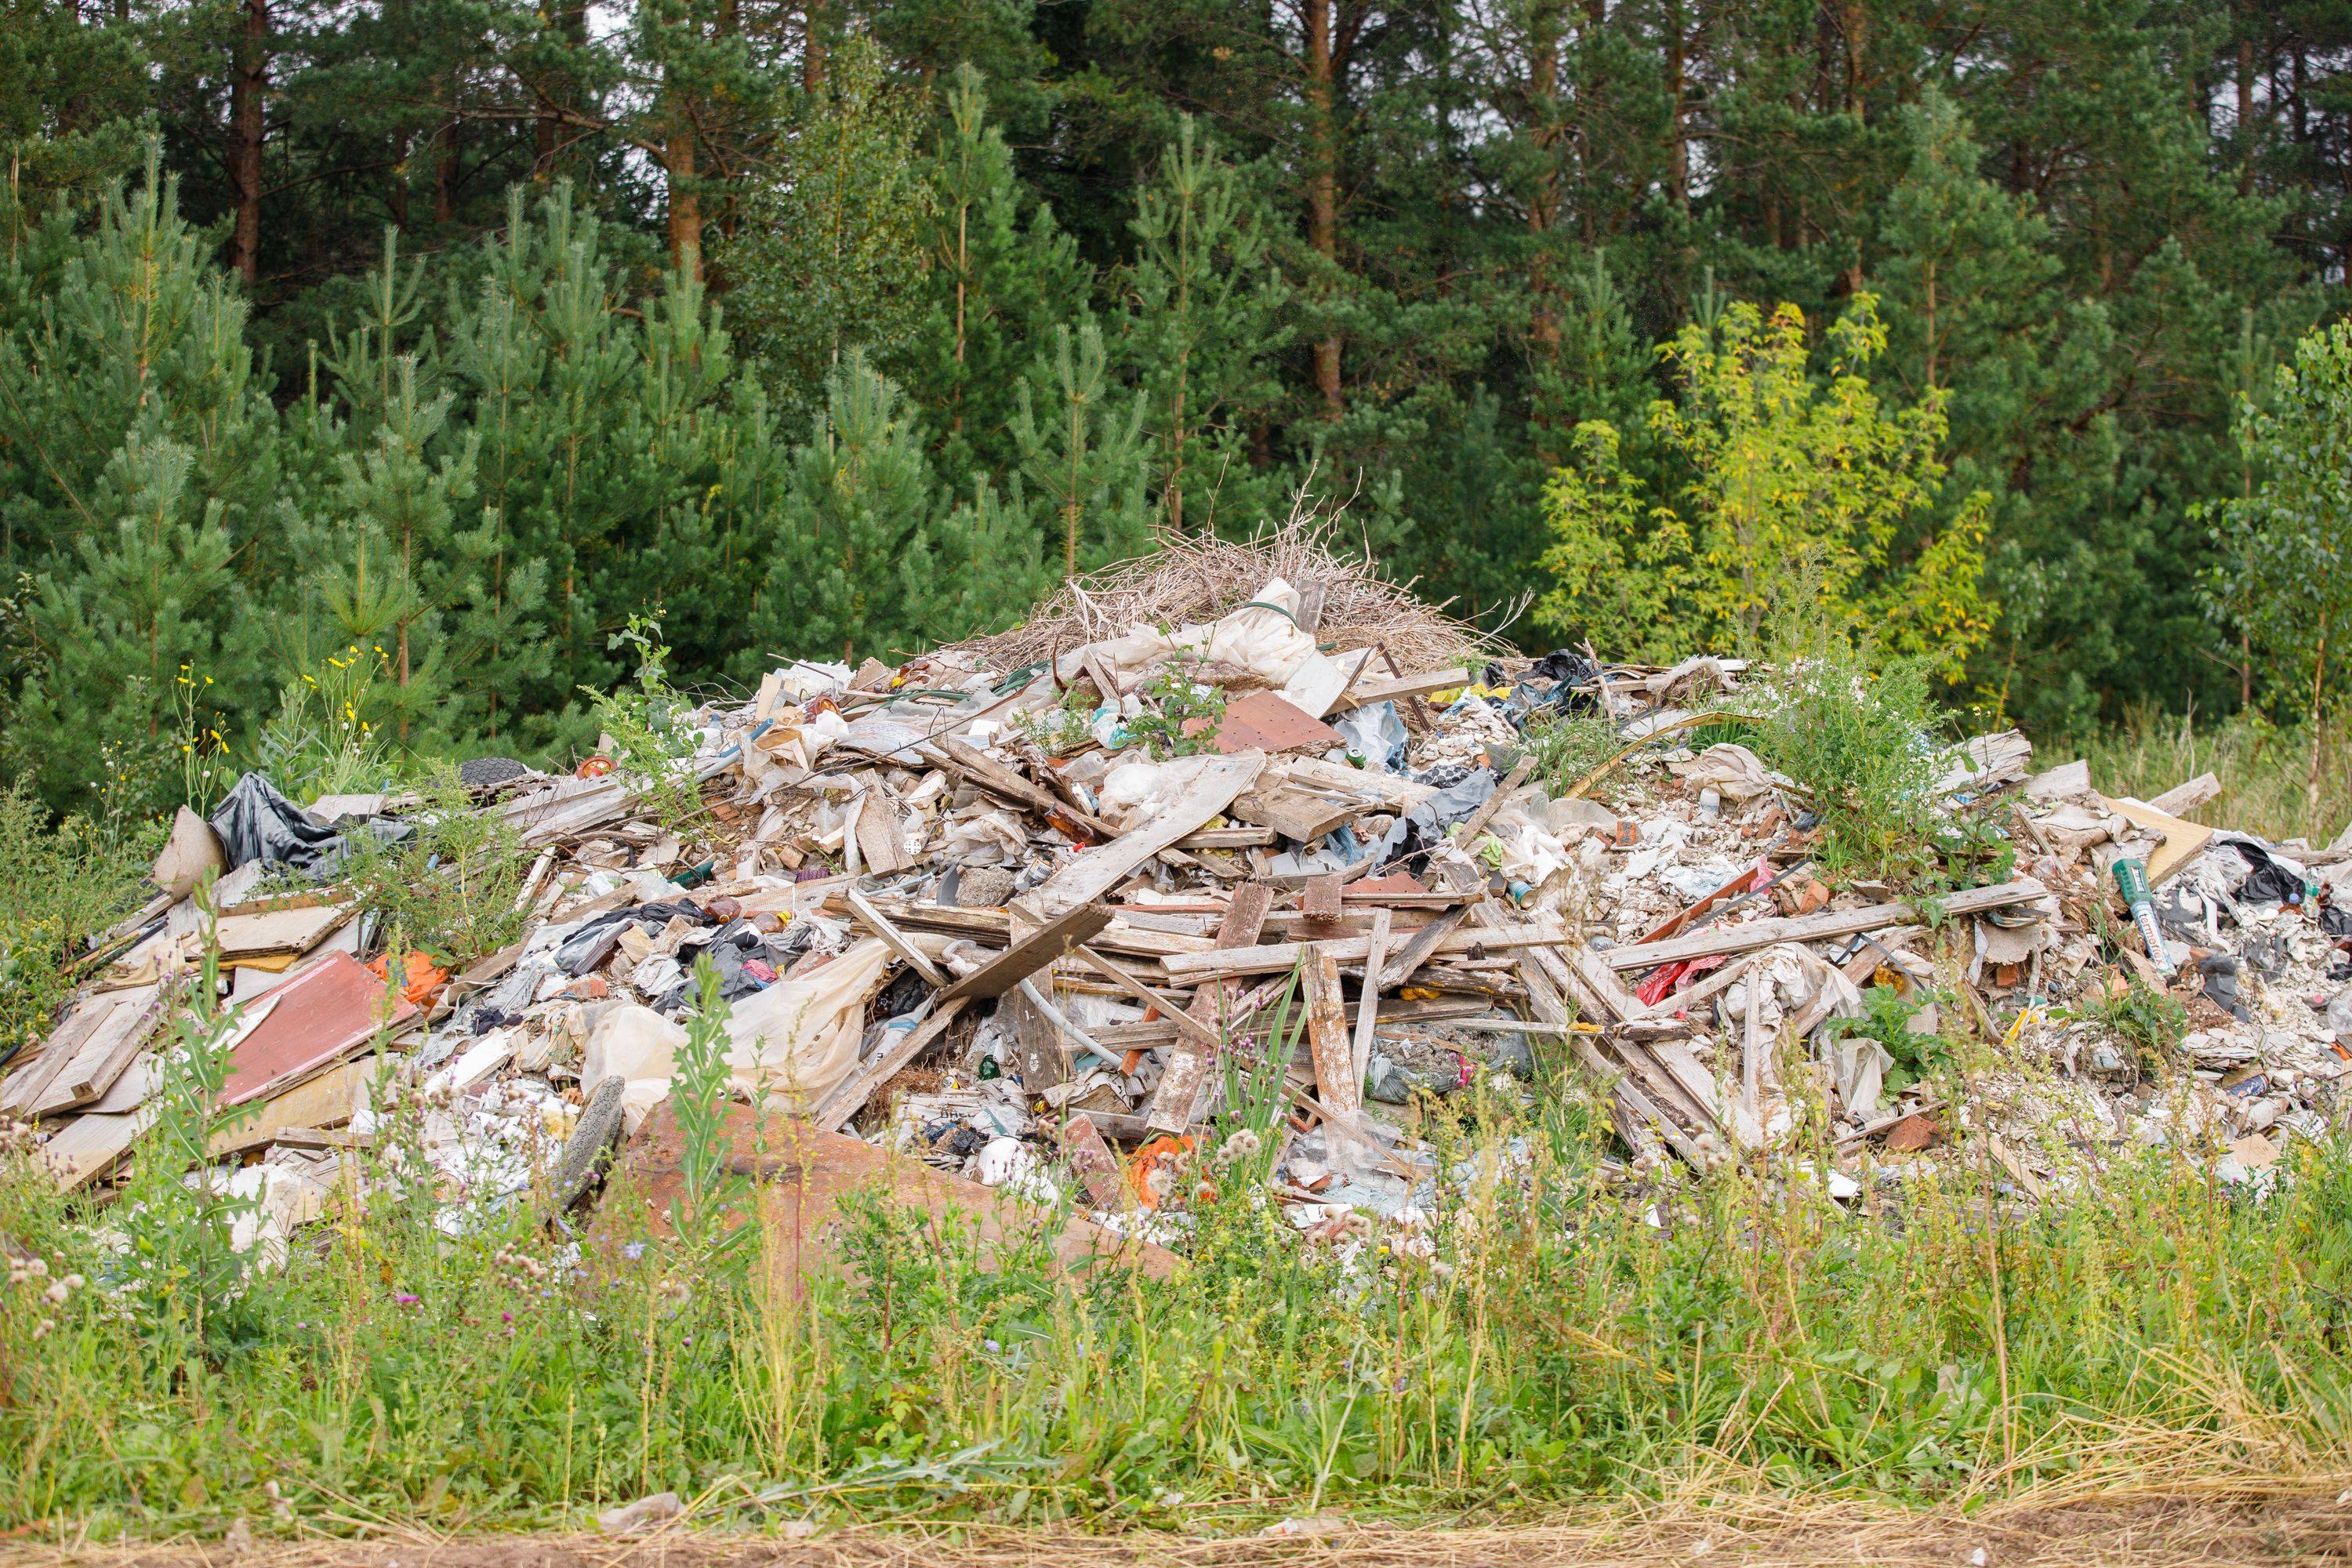  В Тверской области выявлена  свалка отходов производства и потребления - новости Афанасий